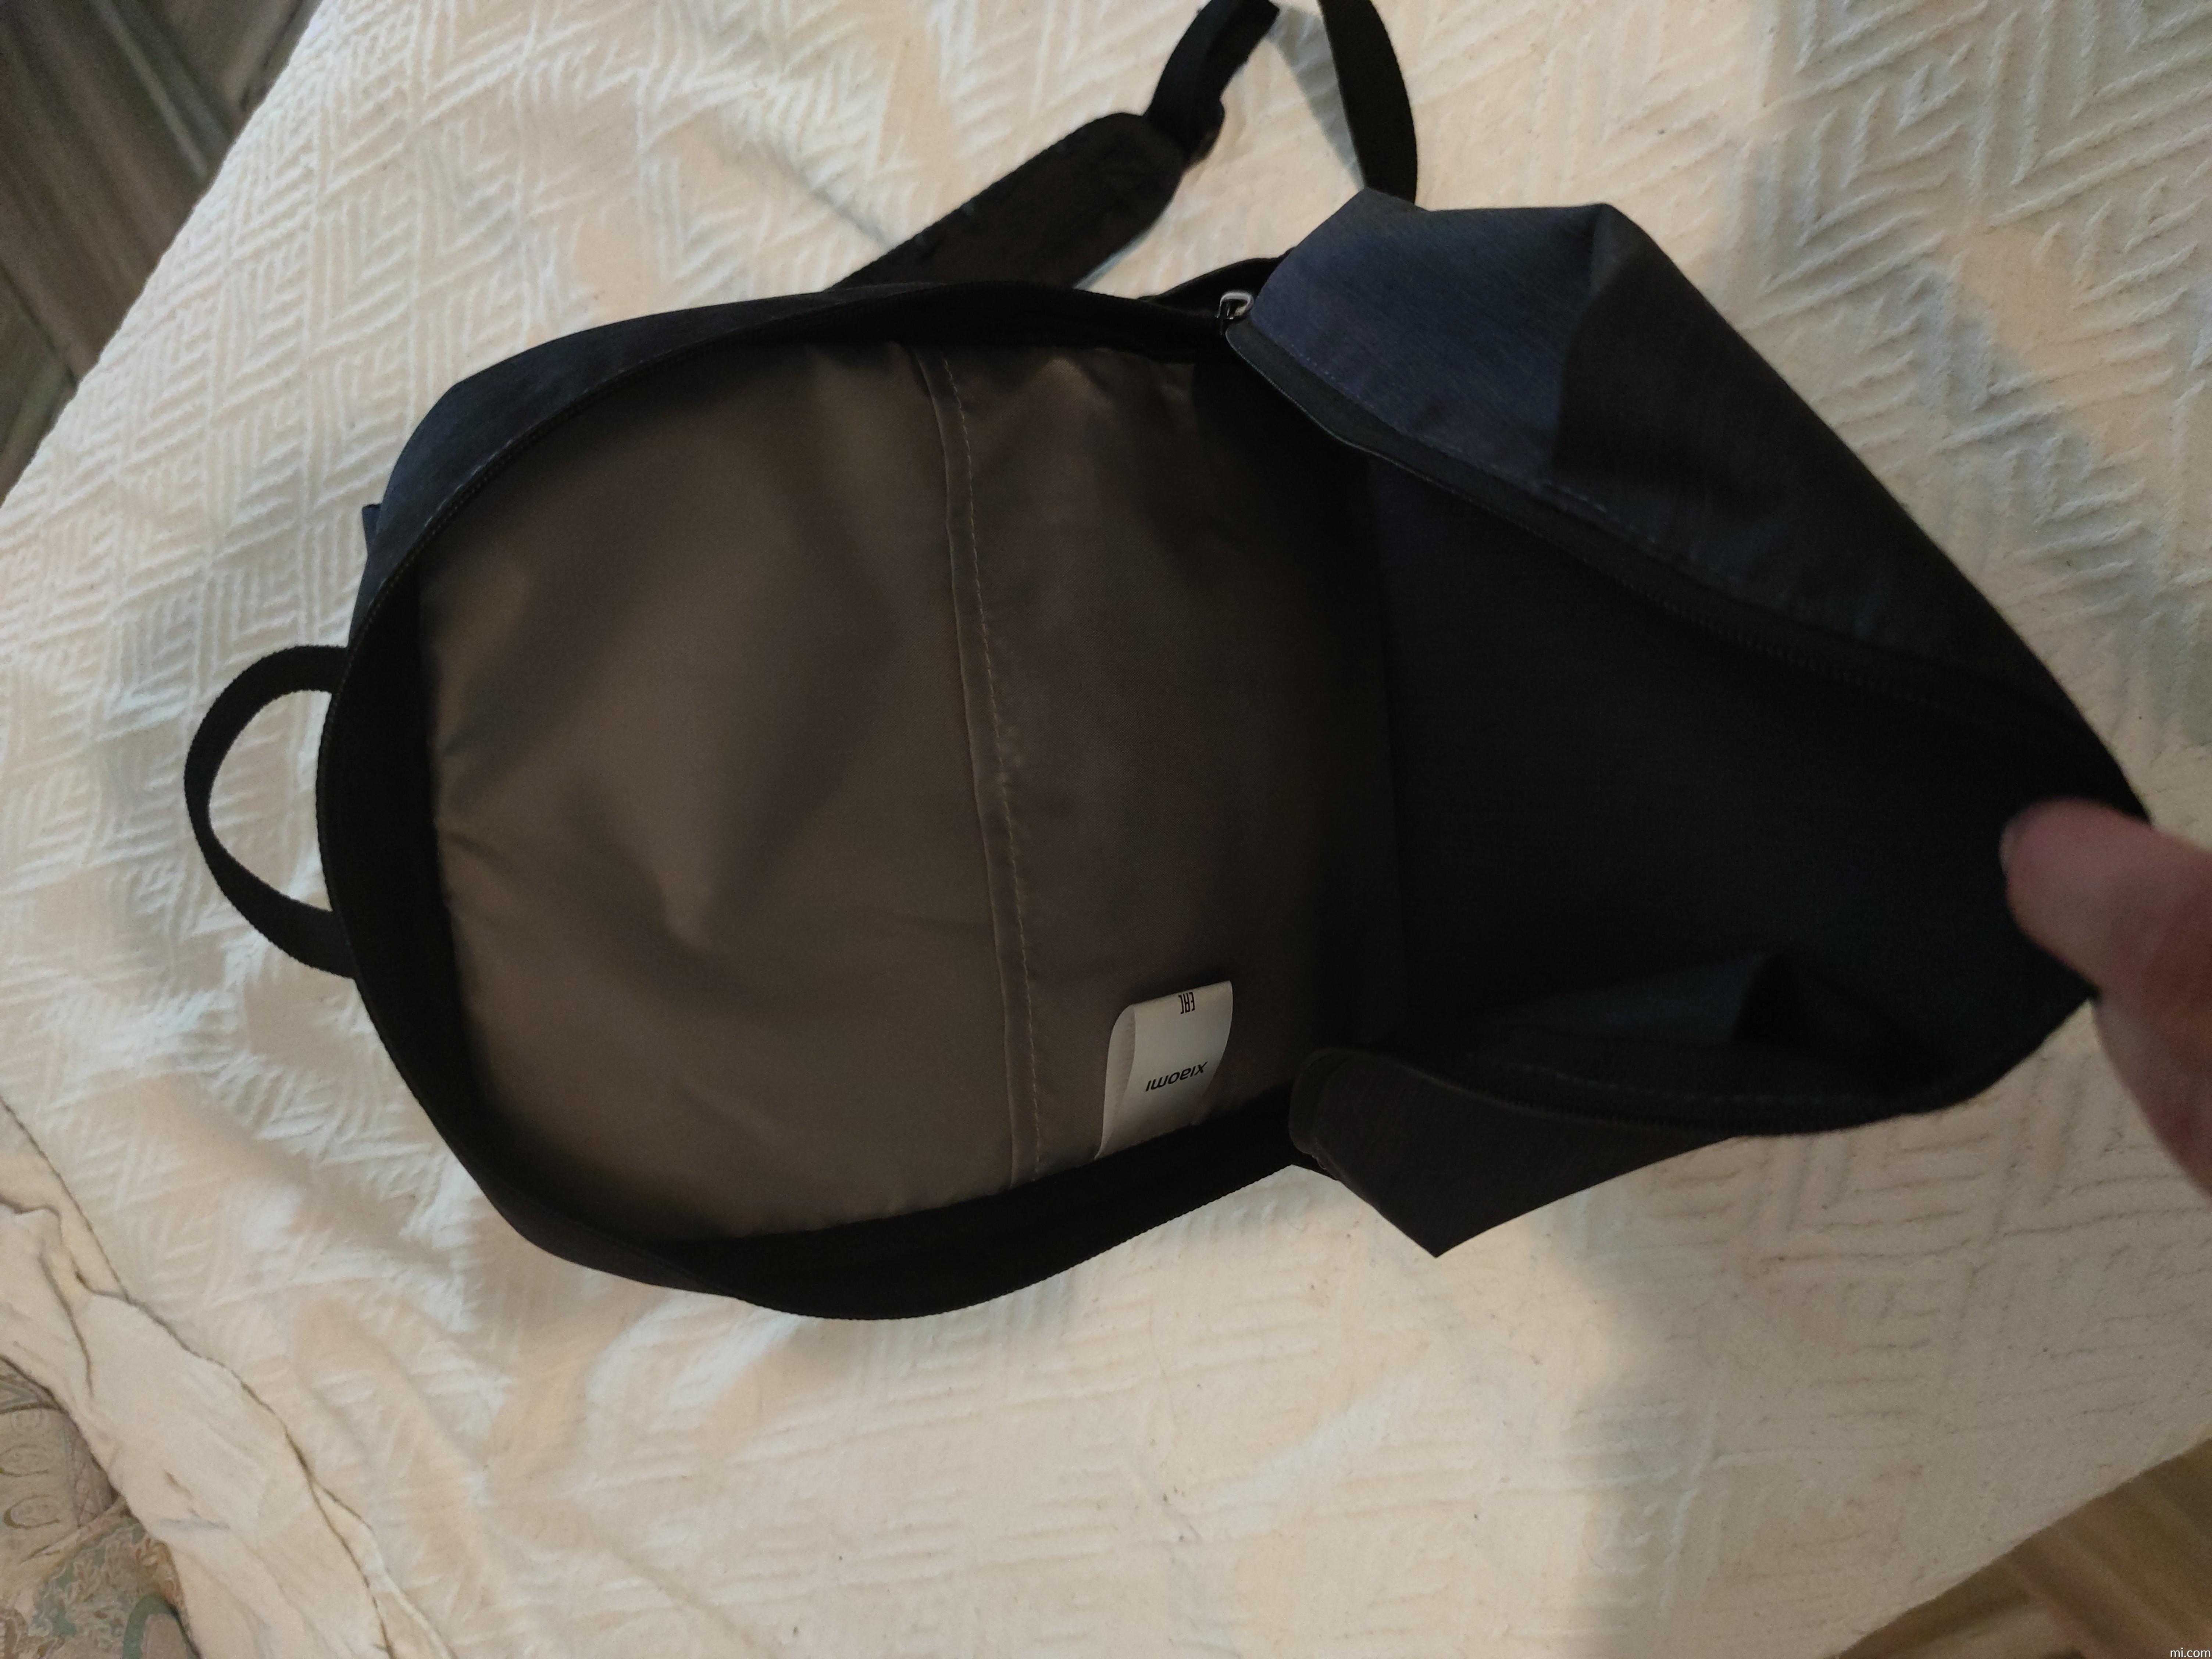 Mochila Xiaomi Backpack Mi Casual Daypack Cómoda Color Pink